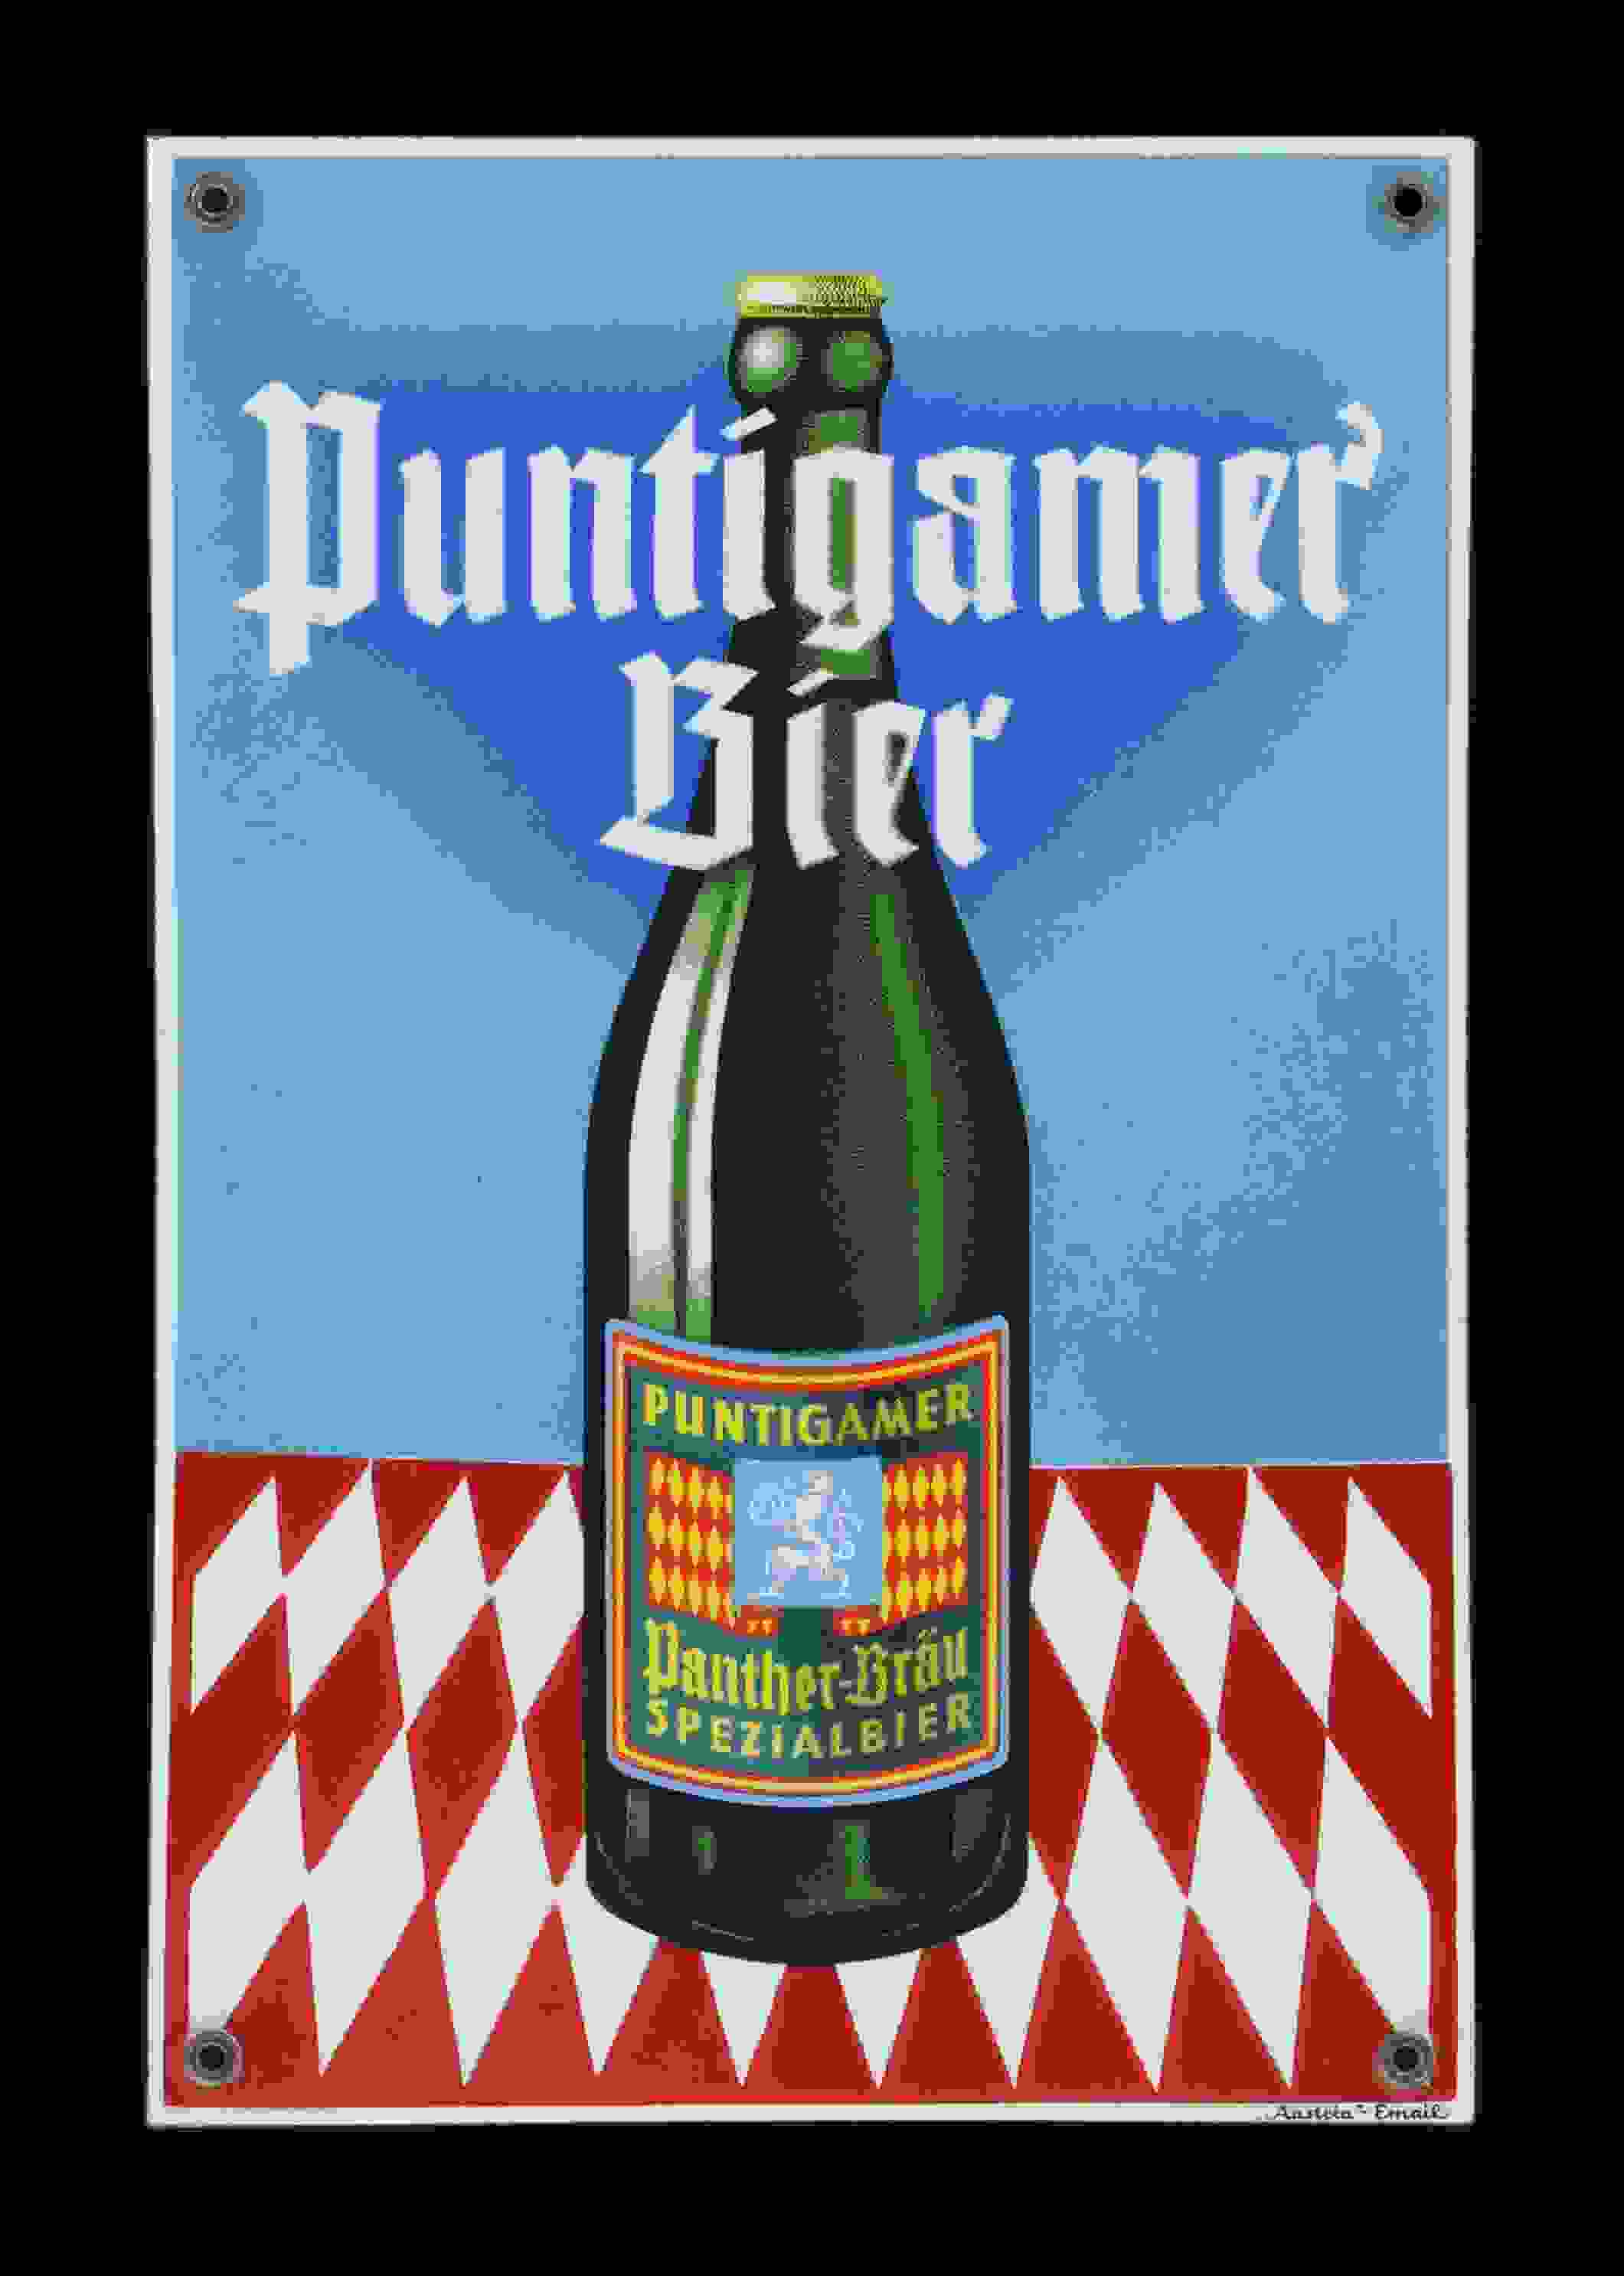 Puntigamer Bier Panther-Bräu 